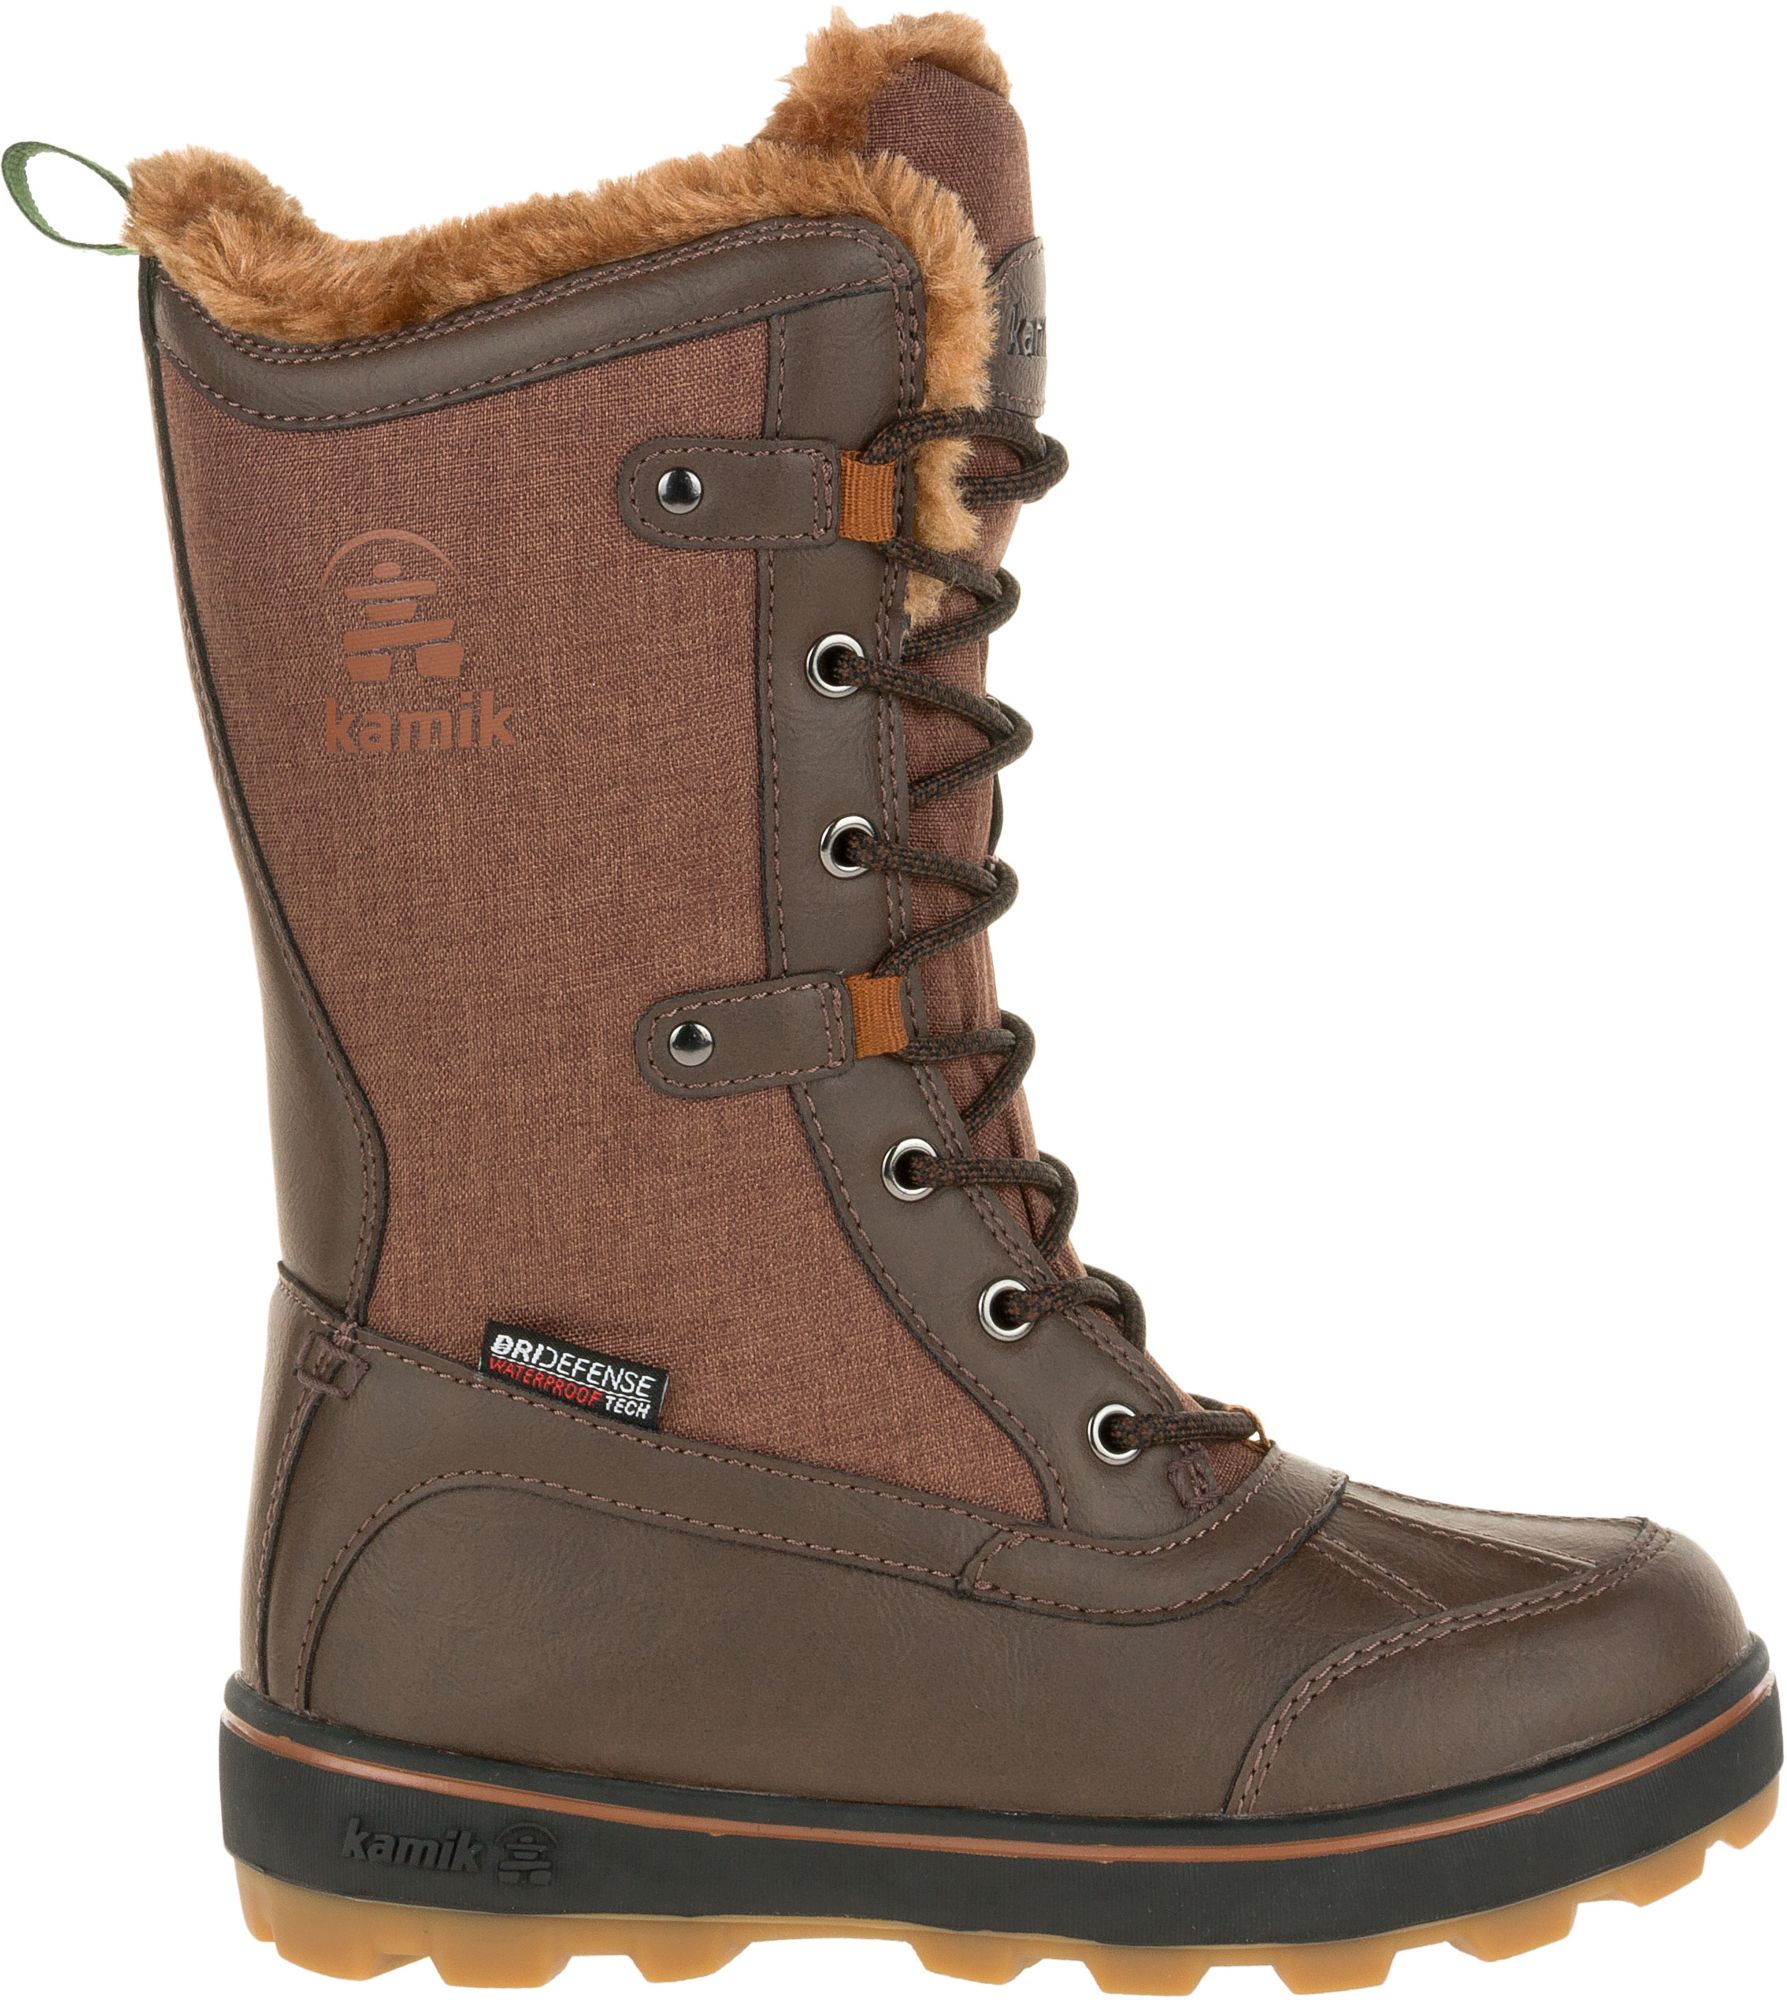 200g winter boots